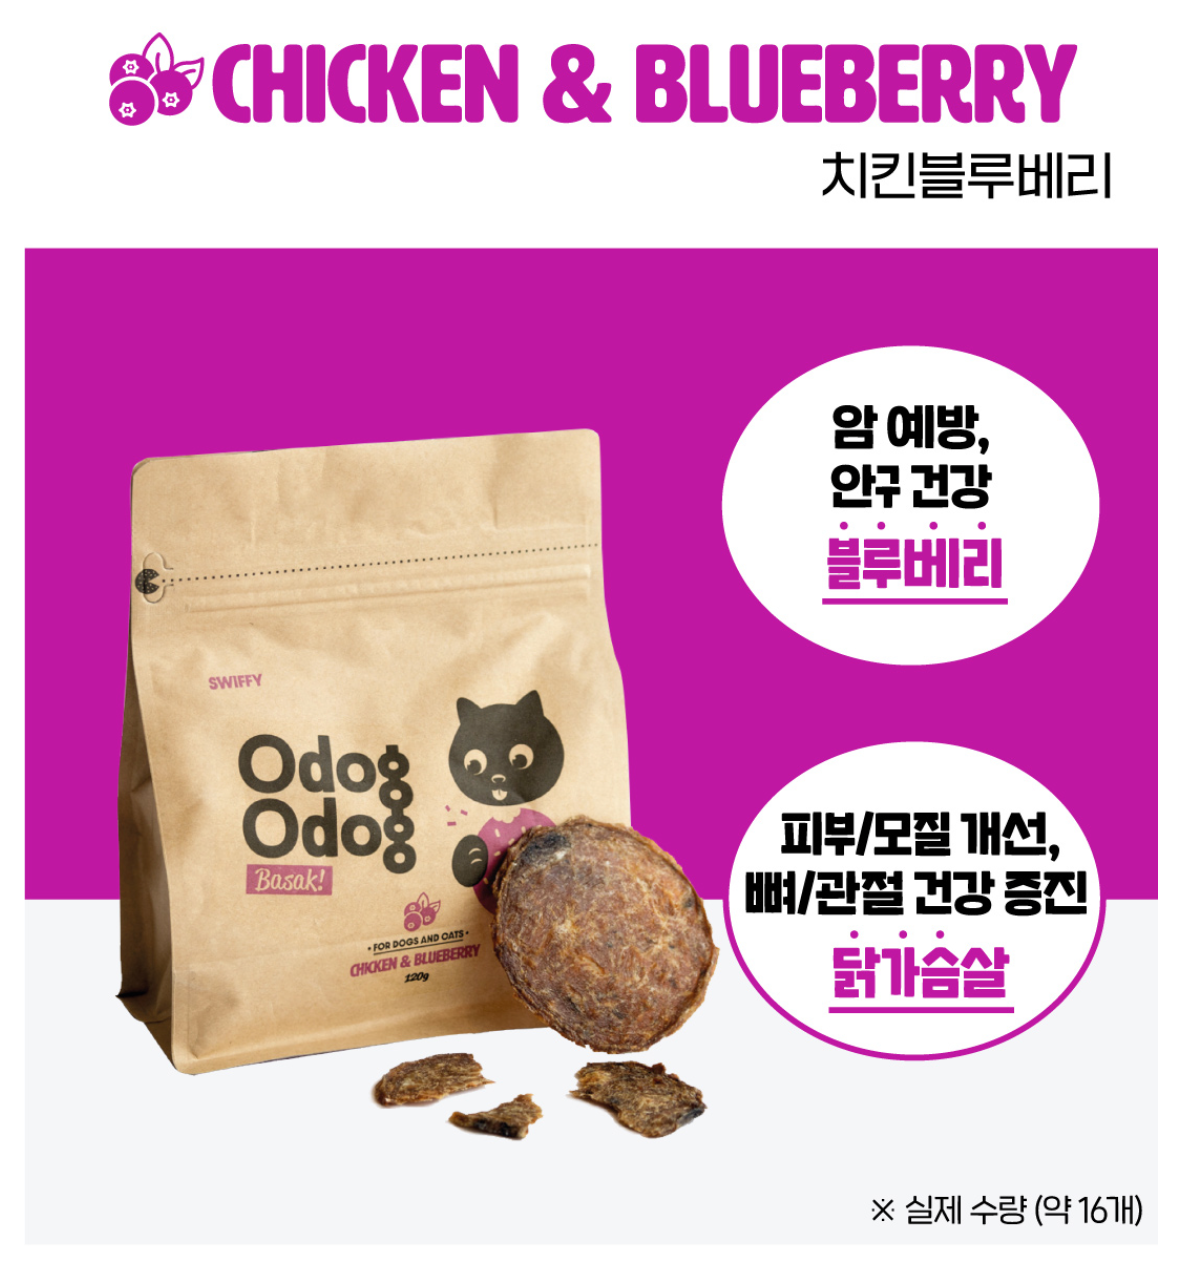 SWIFFY Odog Odog Crispy - Chicken & Blueberry